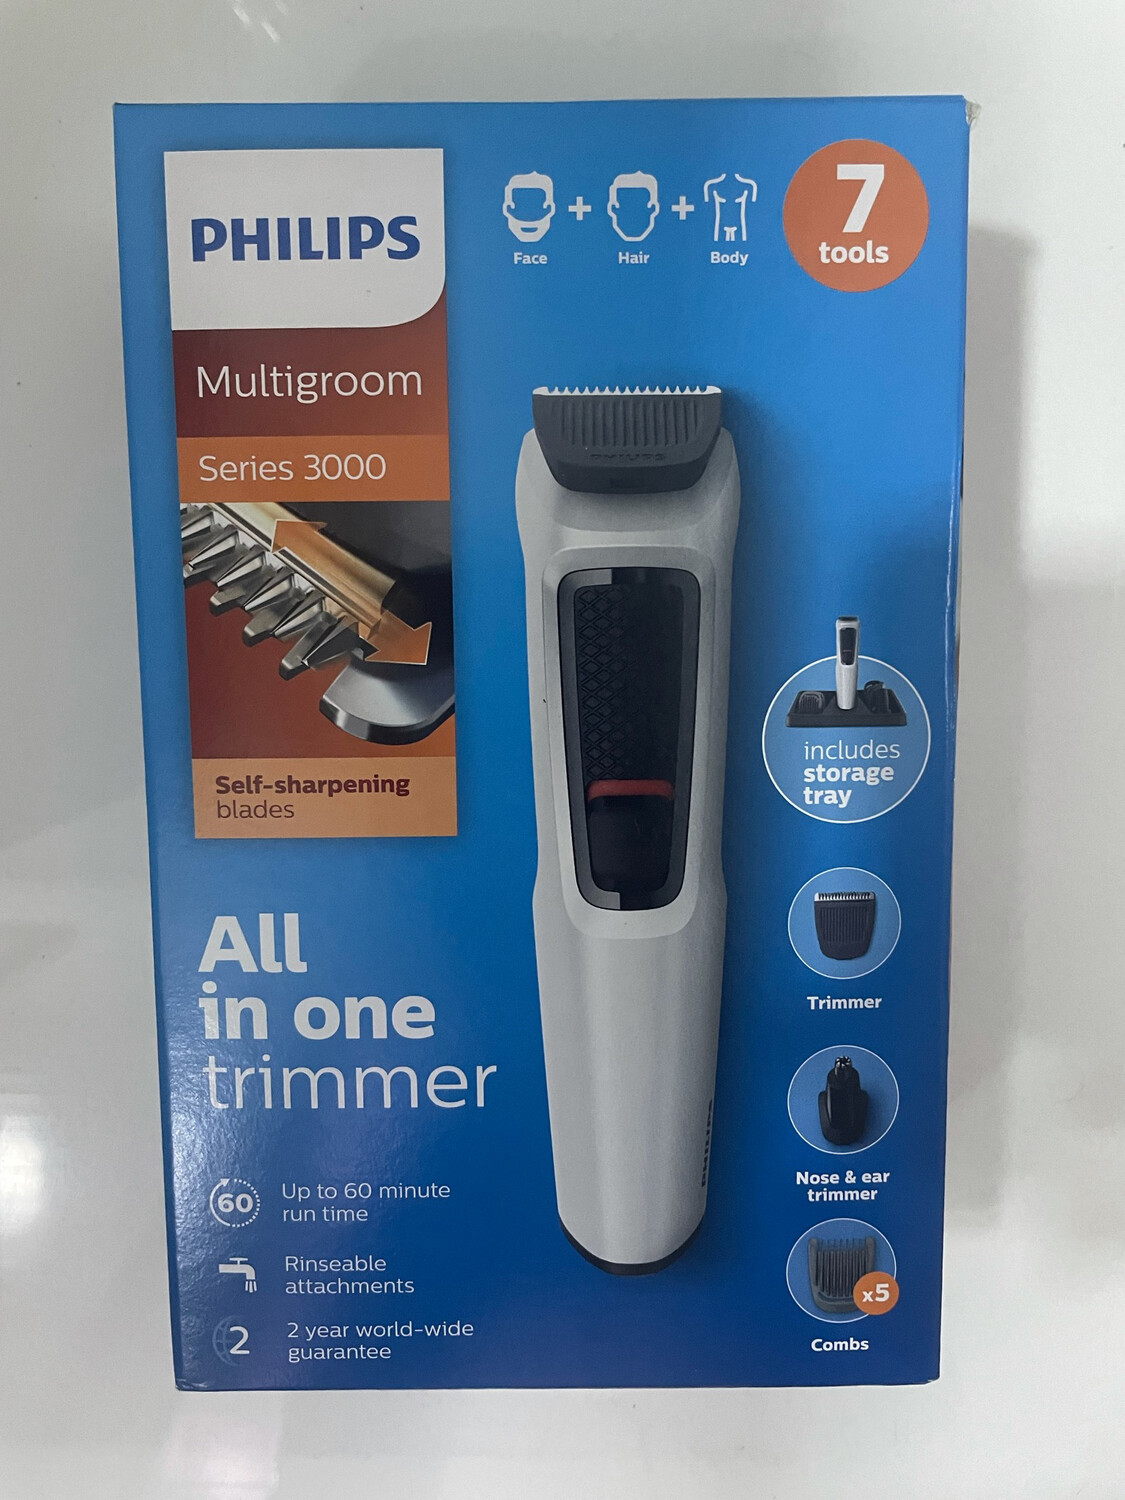 Philips MG3721/77 Grooming Kit For Men